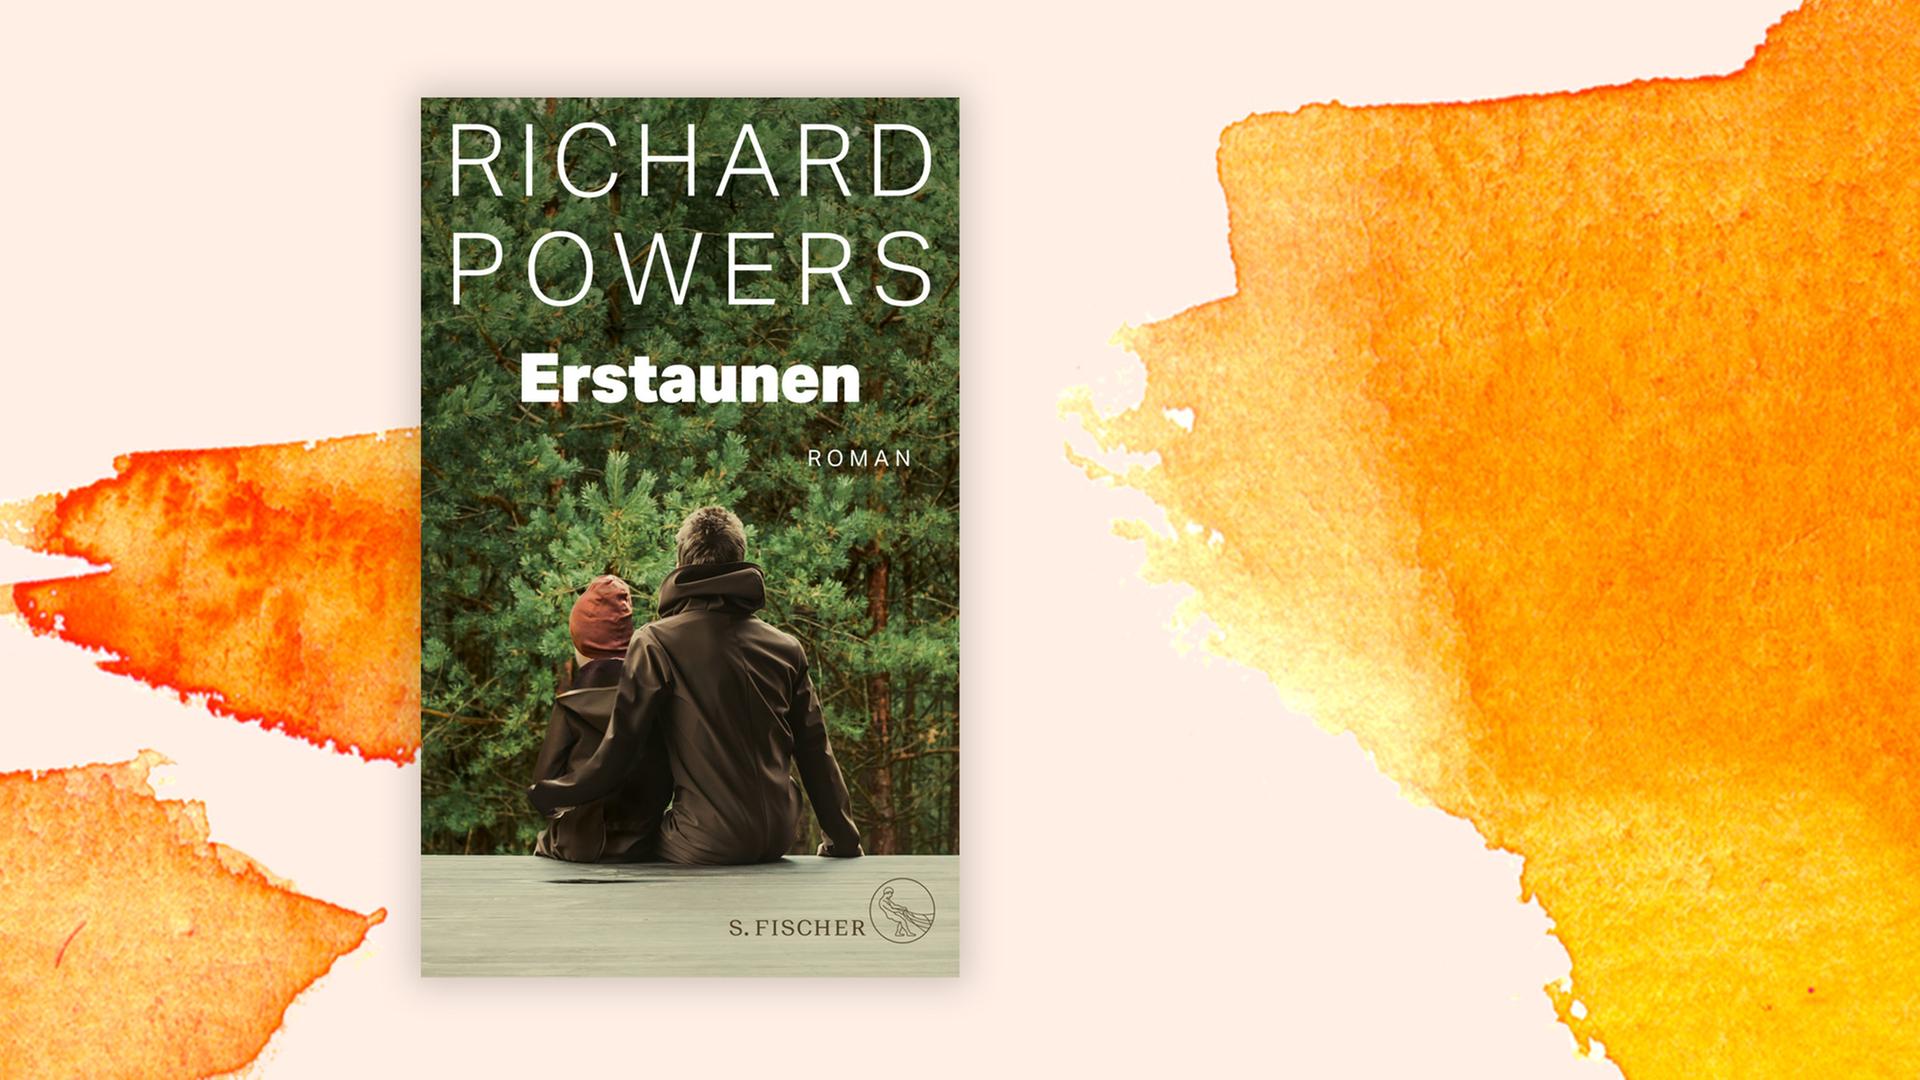 Cover des Romans "Erstaunen" von Richard Powers. Es zeigt von hinten einen Mann und einen Jungen, die auf einer hellen Oberfläche draußen sitzen und auf Nadelbäume schauen. Der Mann hat seinen Arm um den Jungen gelegt.